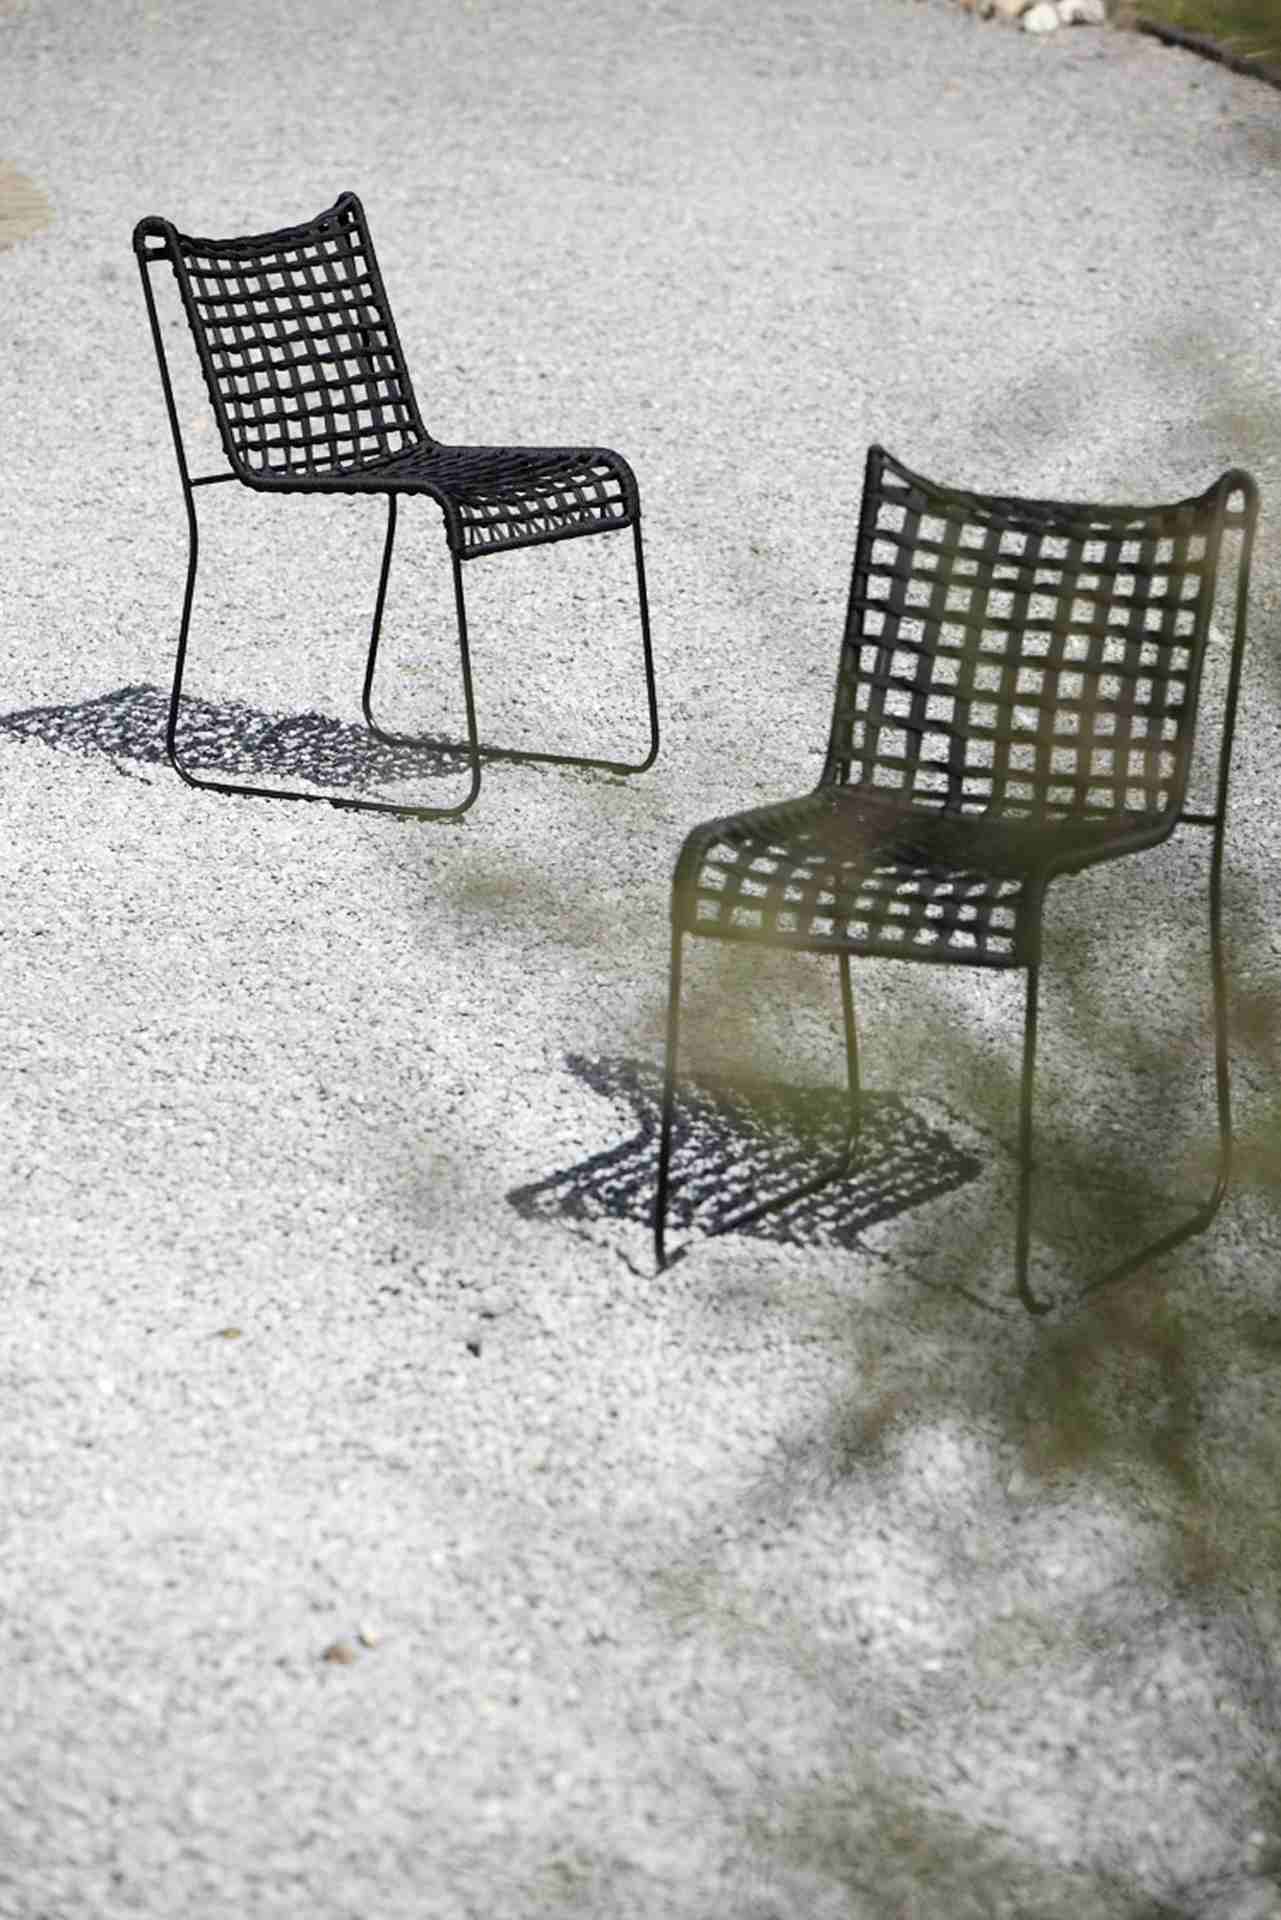 Moderner Gartenstuhl In / Out welcher aus Metall gefertigt wurde. Designet von der Marke Jan Kurtz in einem schwarzen Farbton. Outdoor geeignet.